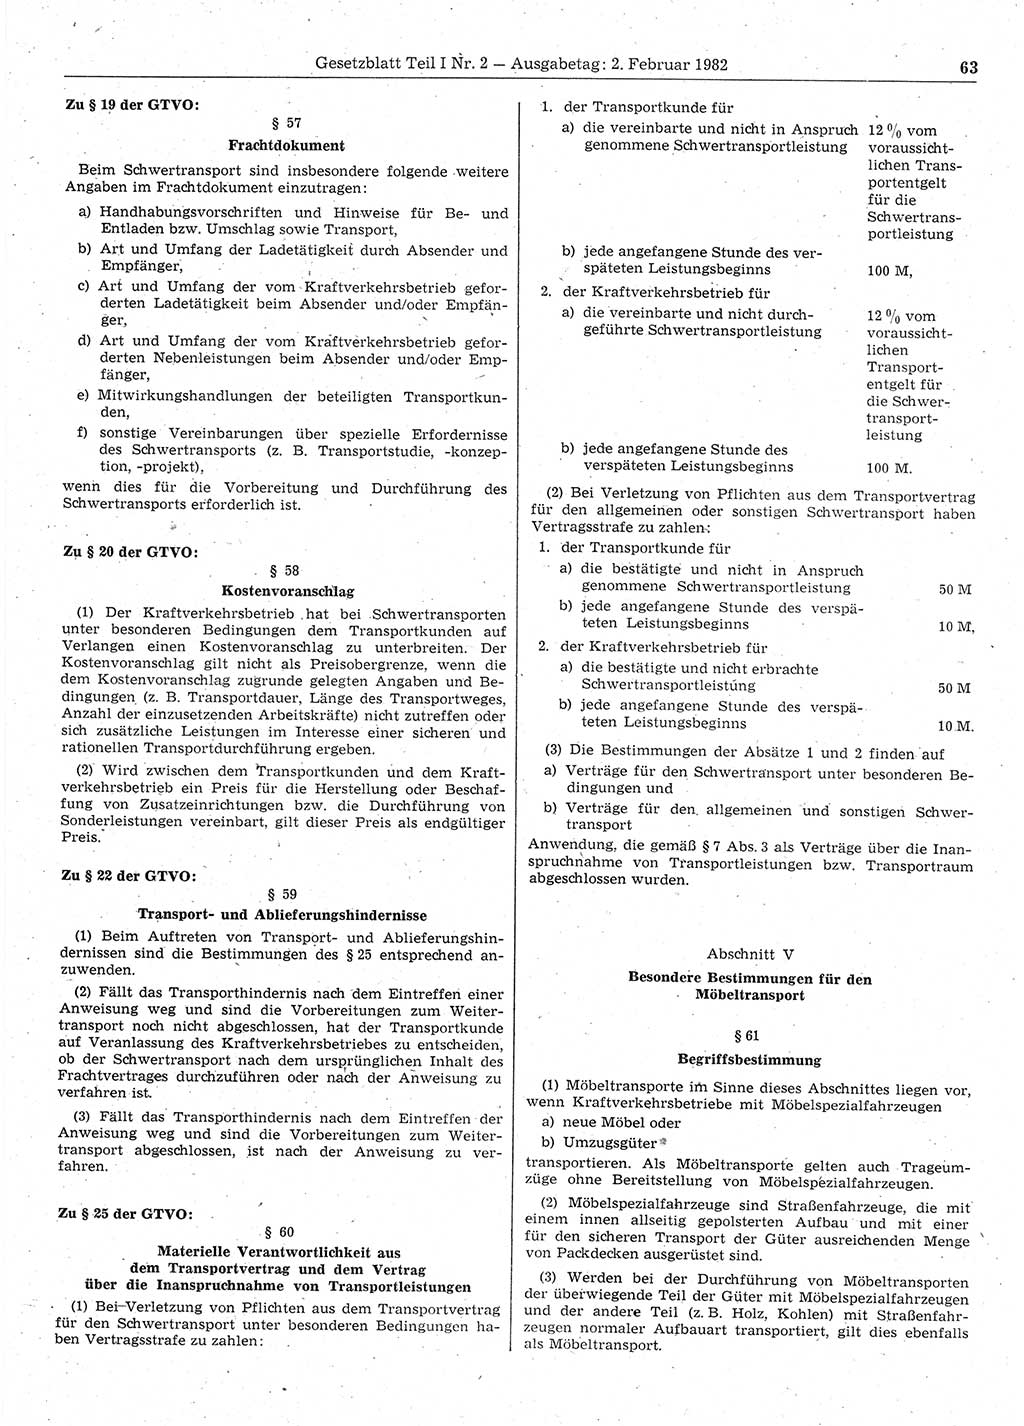 Gesetzblatt (GBl.) der Deutschen Demokratischen Republik (DDR) Teil Ⅰ 1982, Seite 63 (GBl. DDR Ⅰ 1982, S. 63)